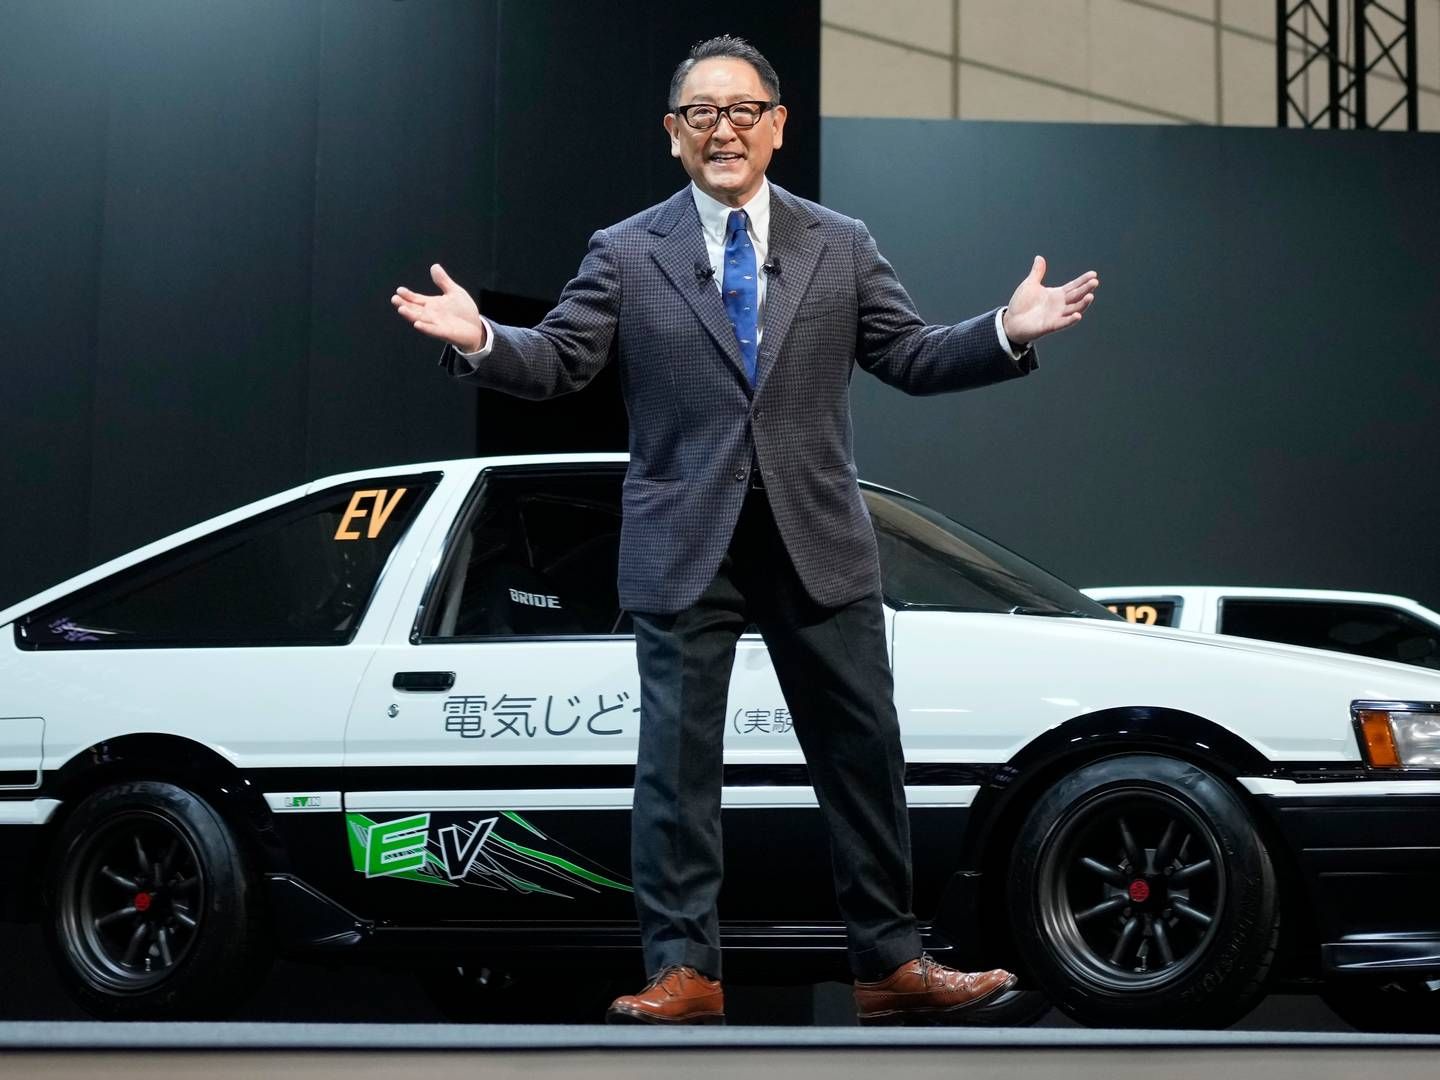 Akio Toyoda, toppsjef i Toyota-konsernet, driver lobbyvirksomhet for fossilbiler som ikke driver selskapet i retning av Paris-avtalen, mener Storebrand.